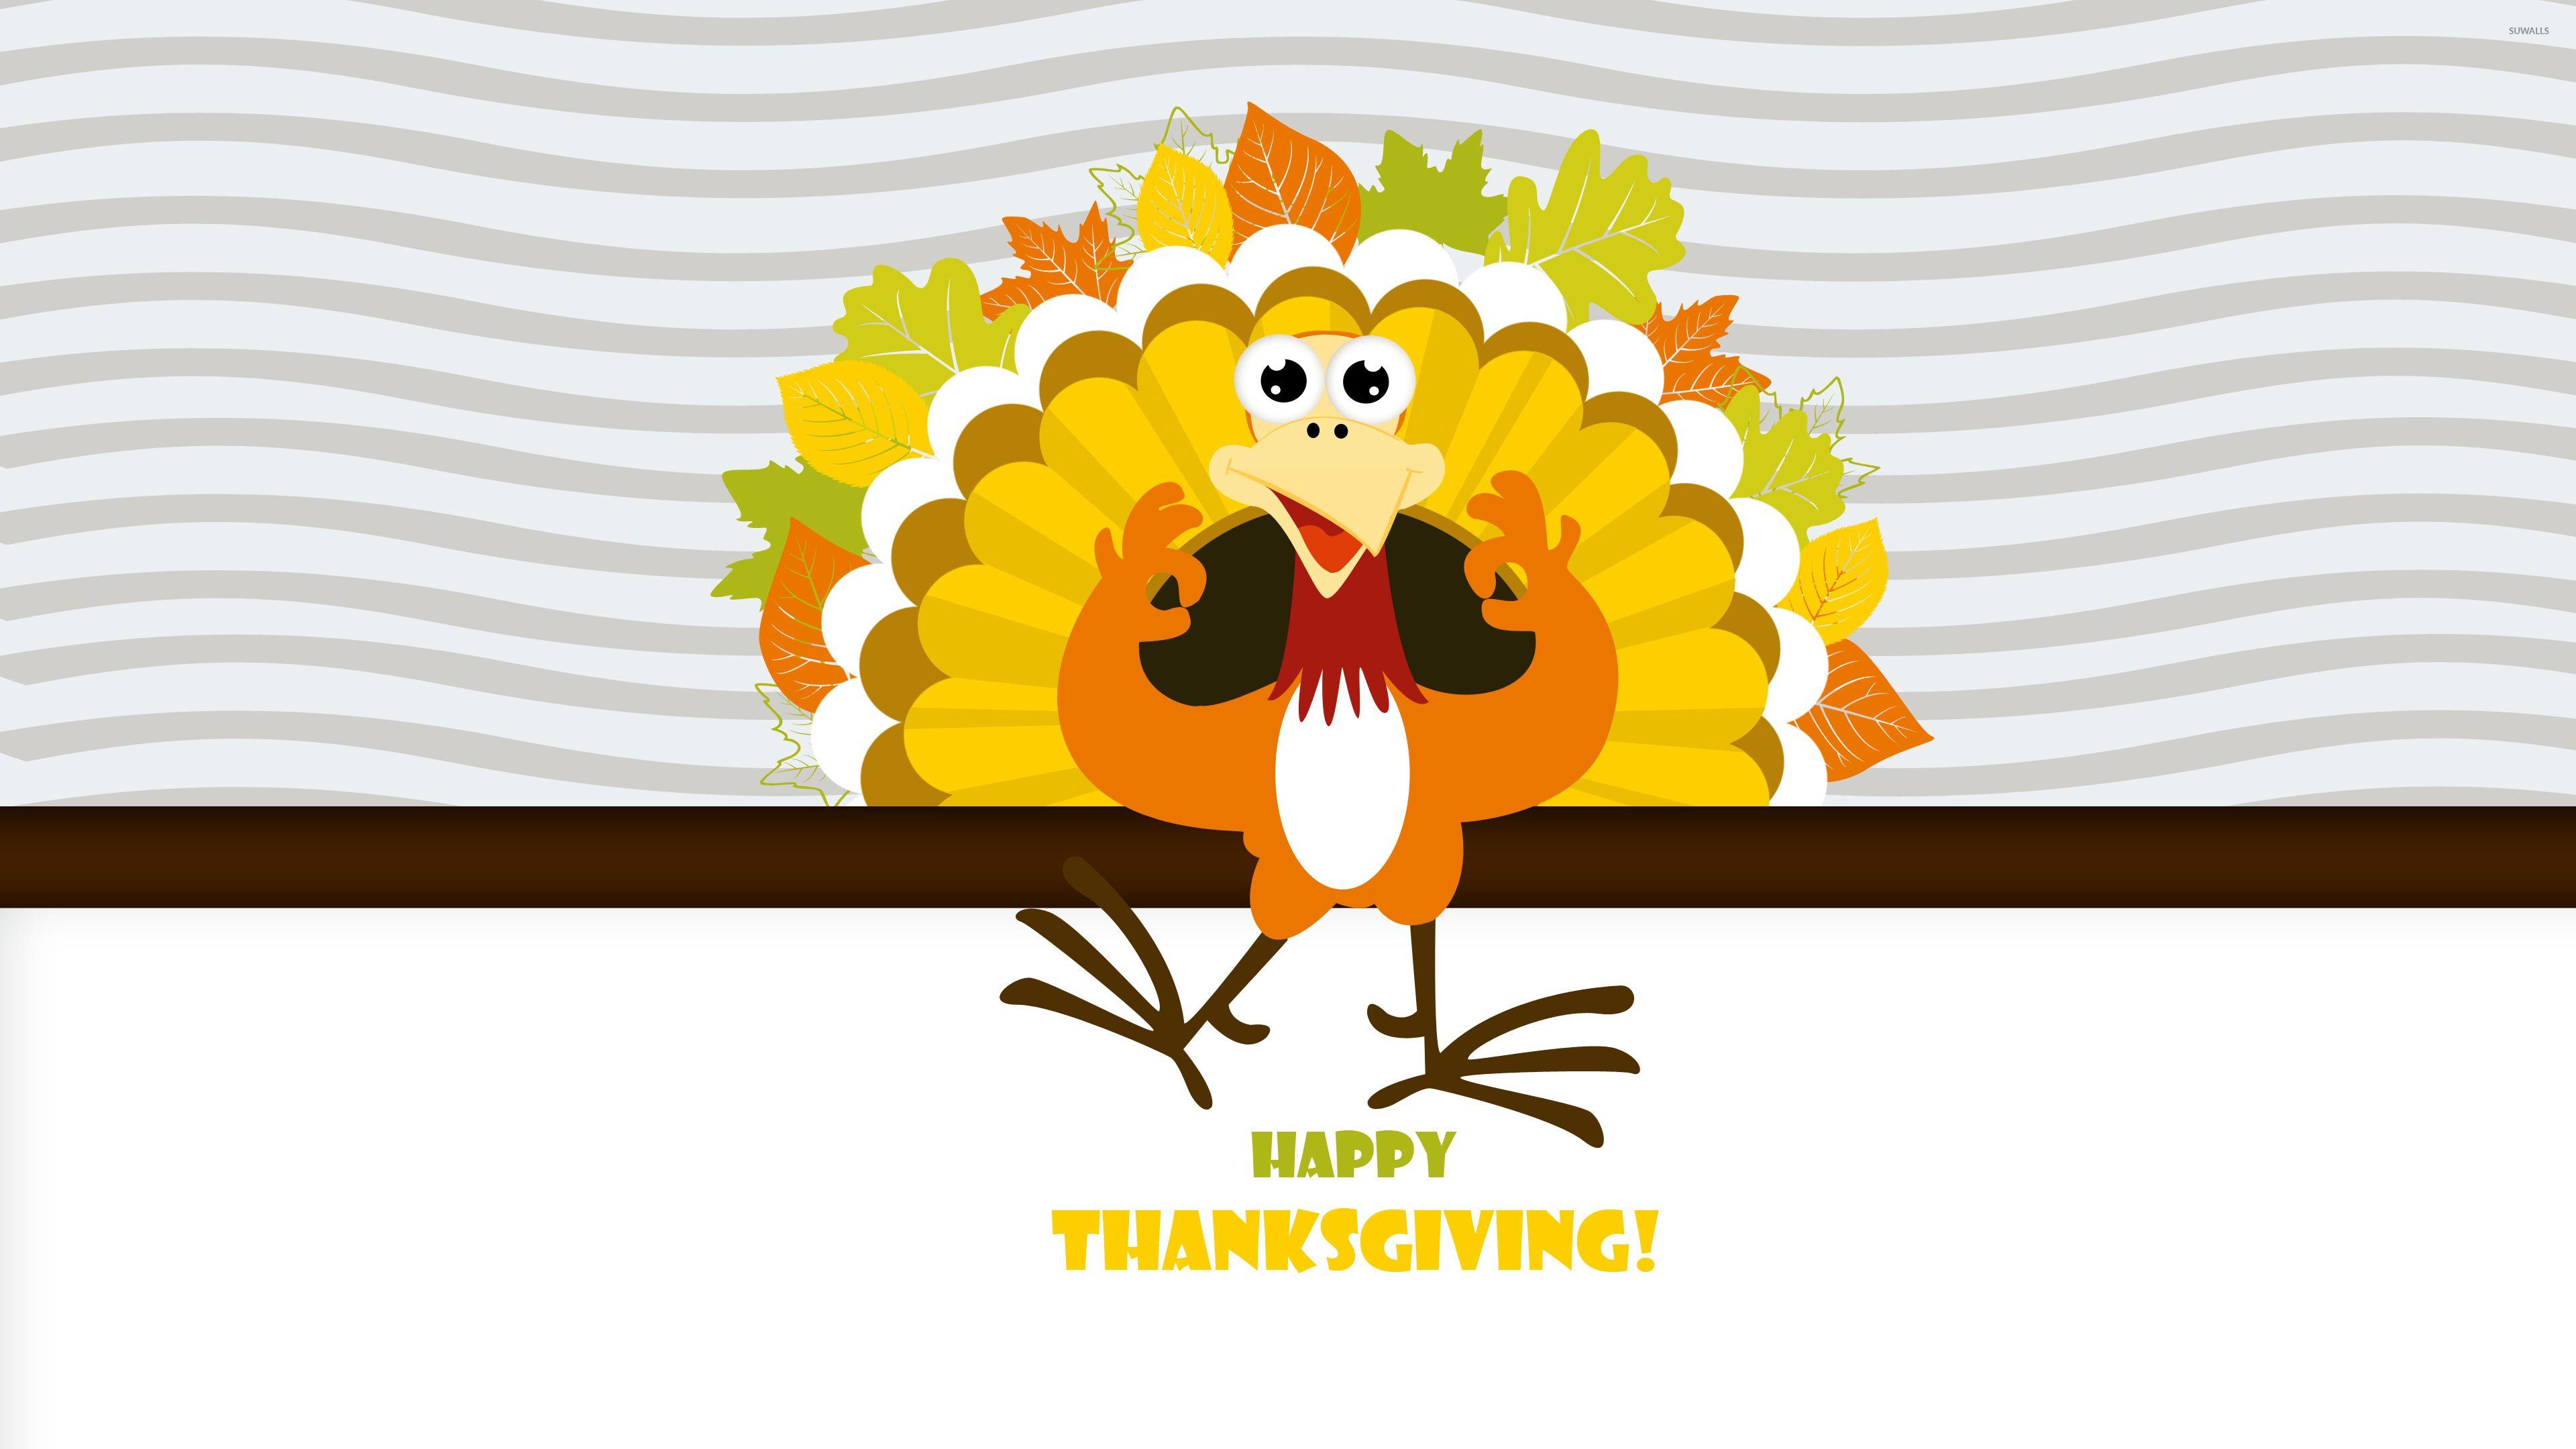 Happy Thanksgiving turkey wallpaper wallpaper